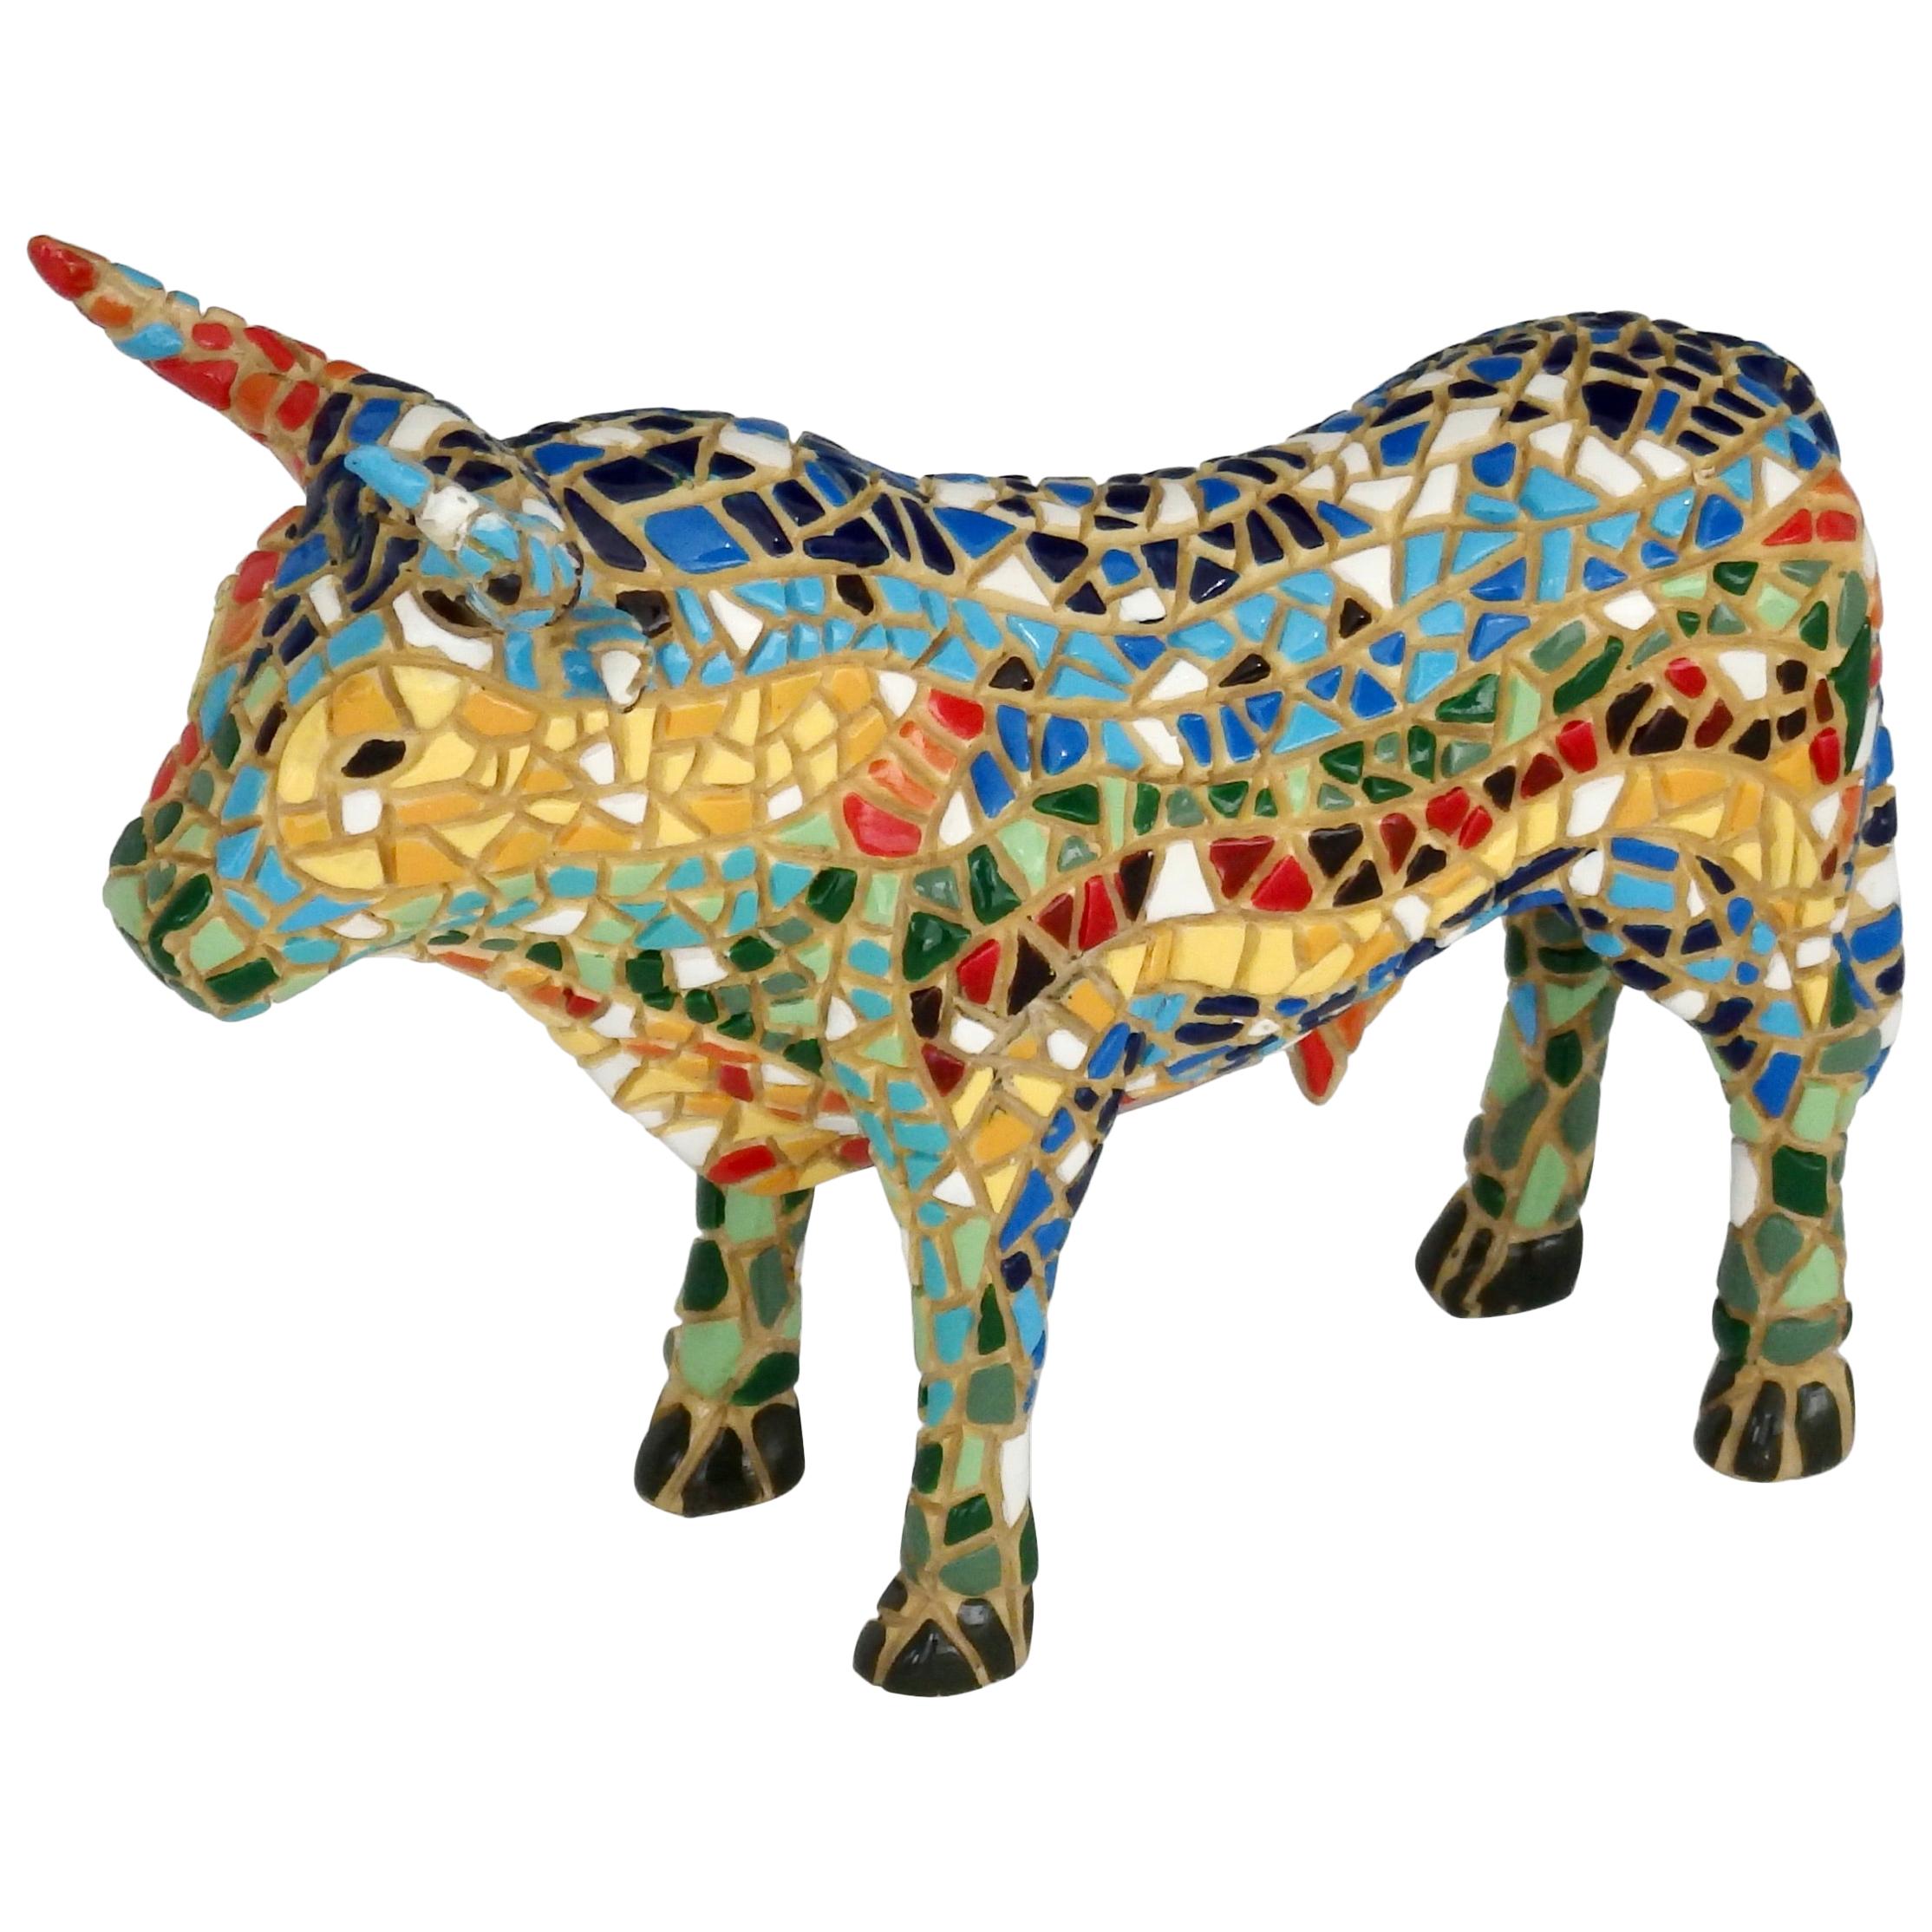 Hand Painted Mosaic Ceramic Bull Figurine